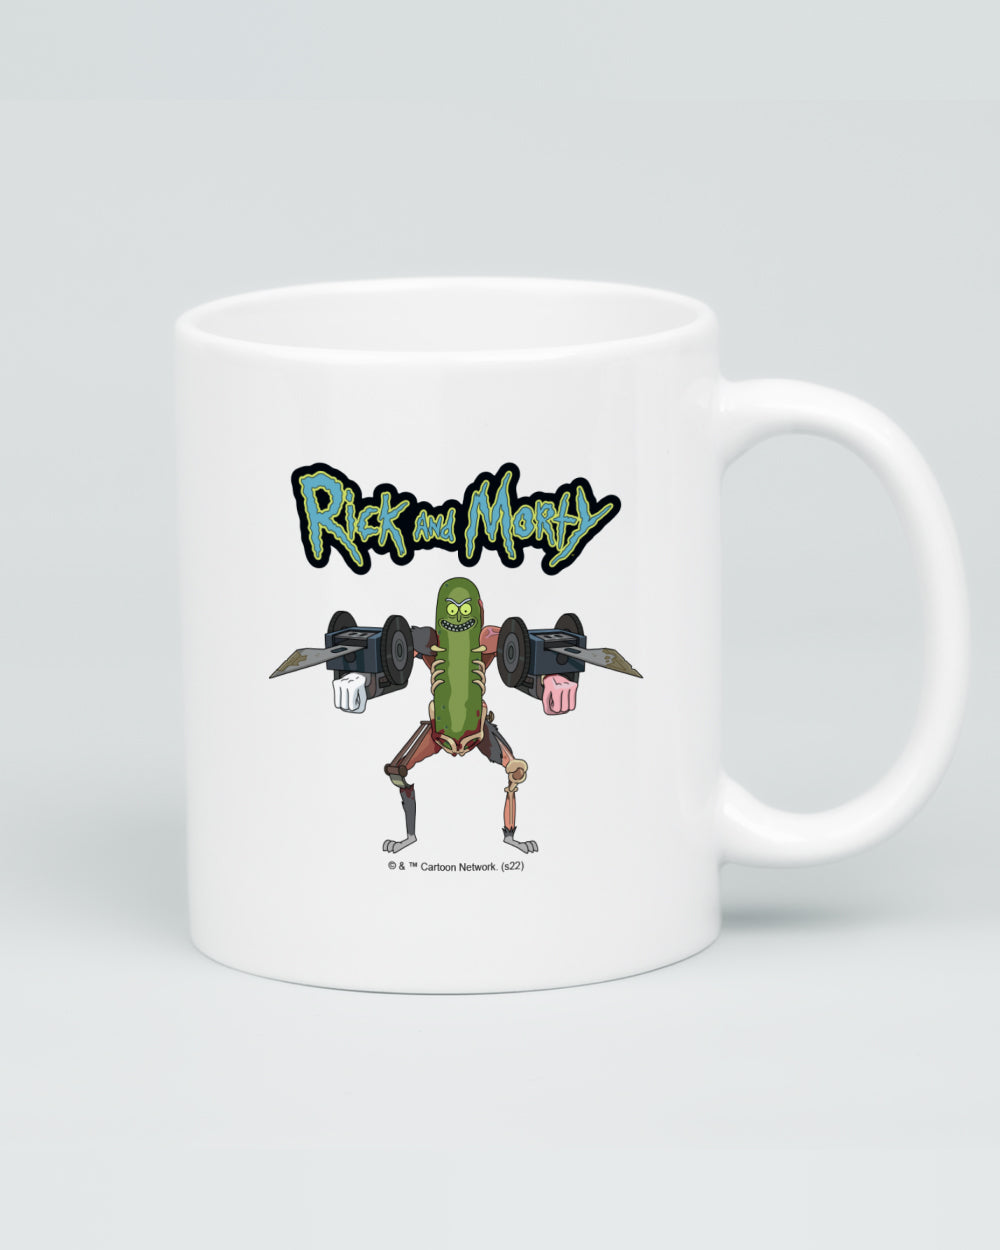 Pickle Rick Mug | Threadheads